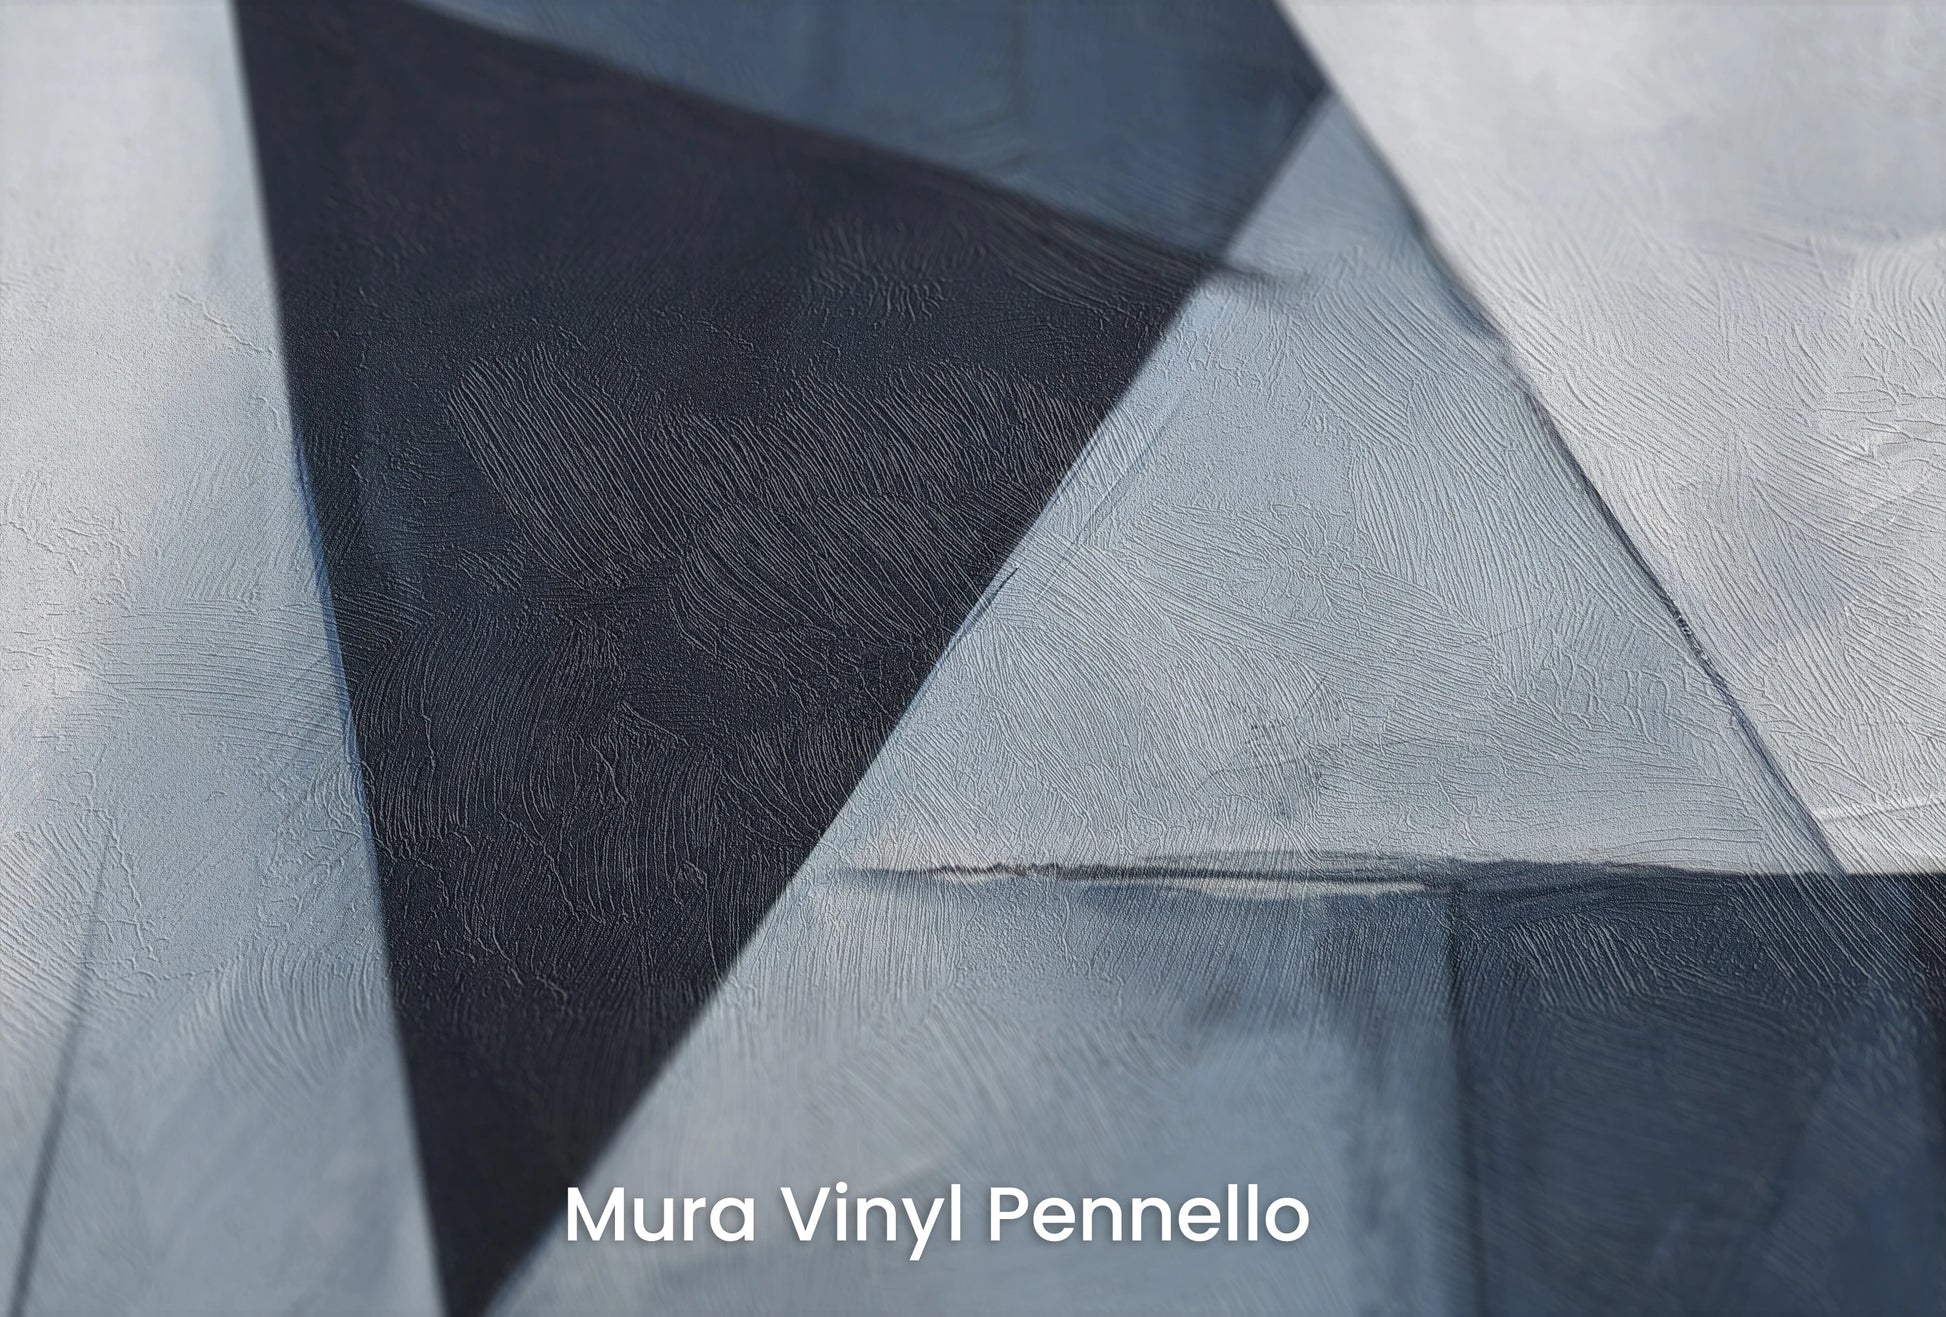 Zbliżenie na artystyczną fototapetę o nazwie Abstract Dimension na podłożu Mura Vinyl Pennello - faktura pociągnięć pędzla malarskiego.